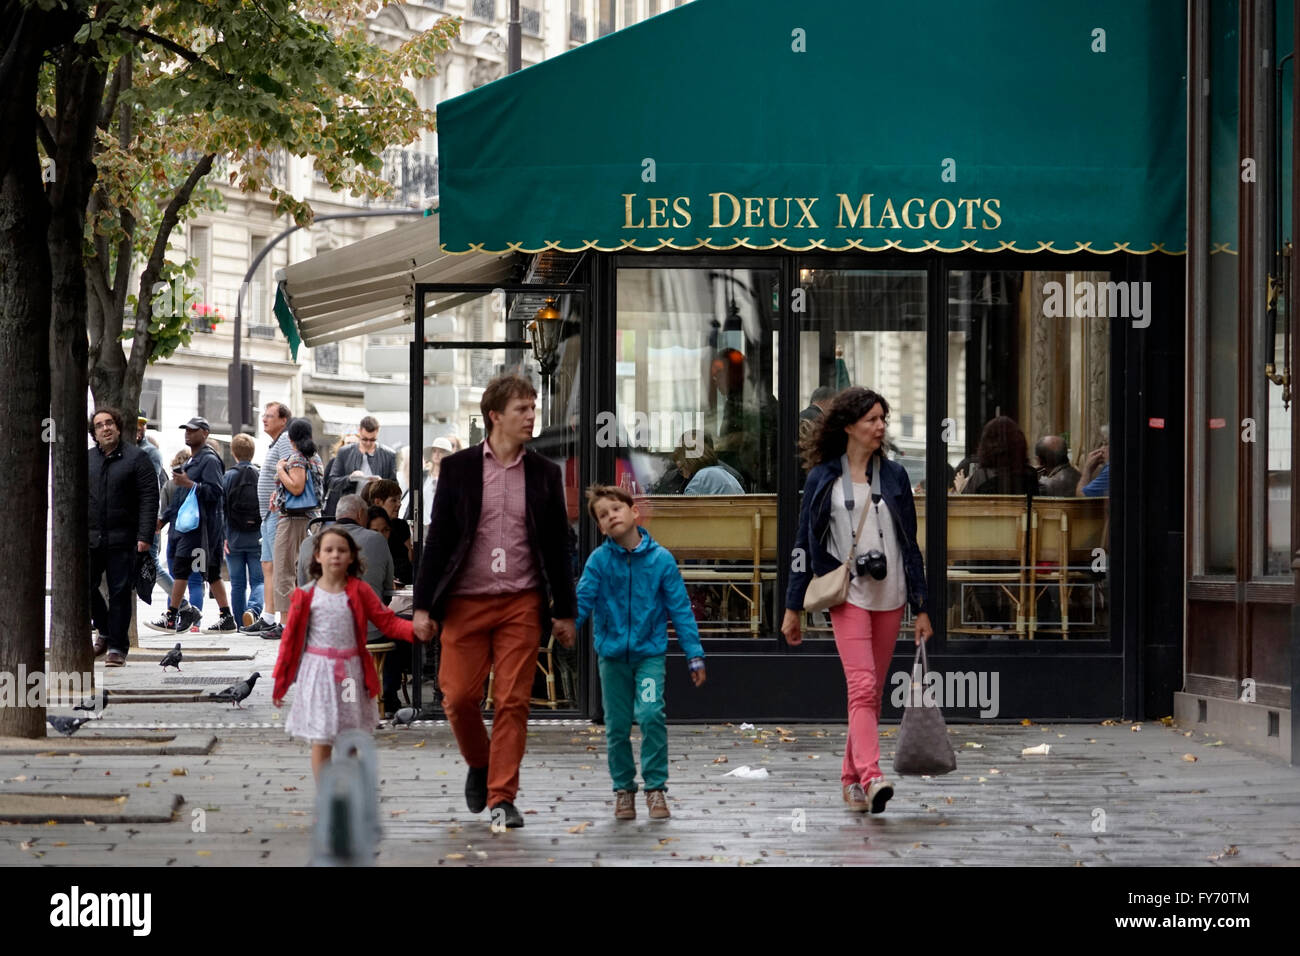 Cafe Les Deux Magots, Saint Germain des Pres, Paris France Stock Photo